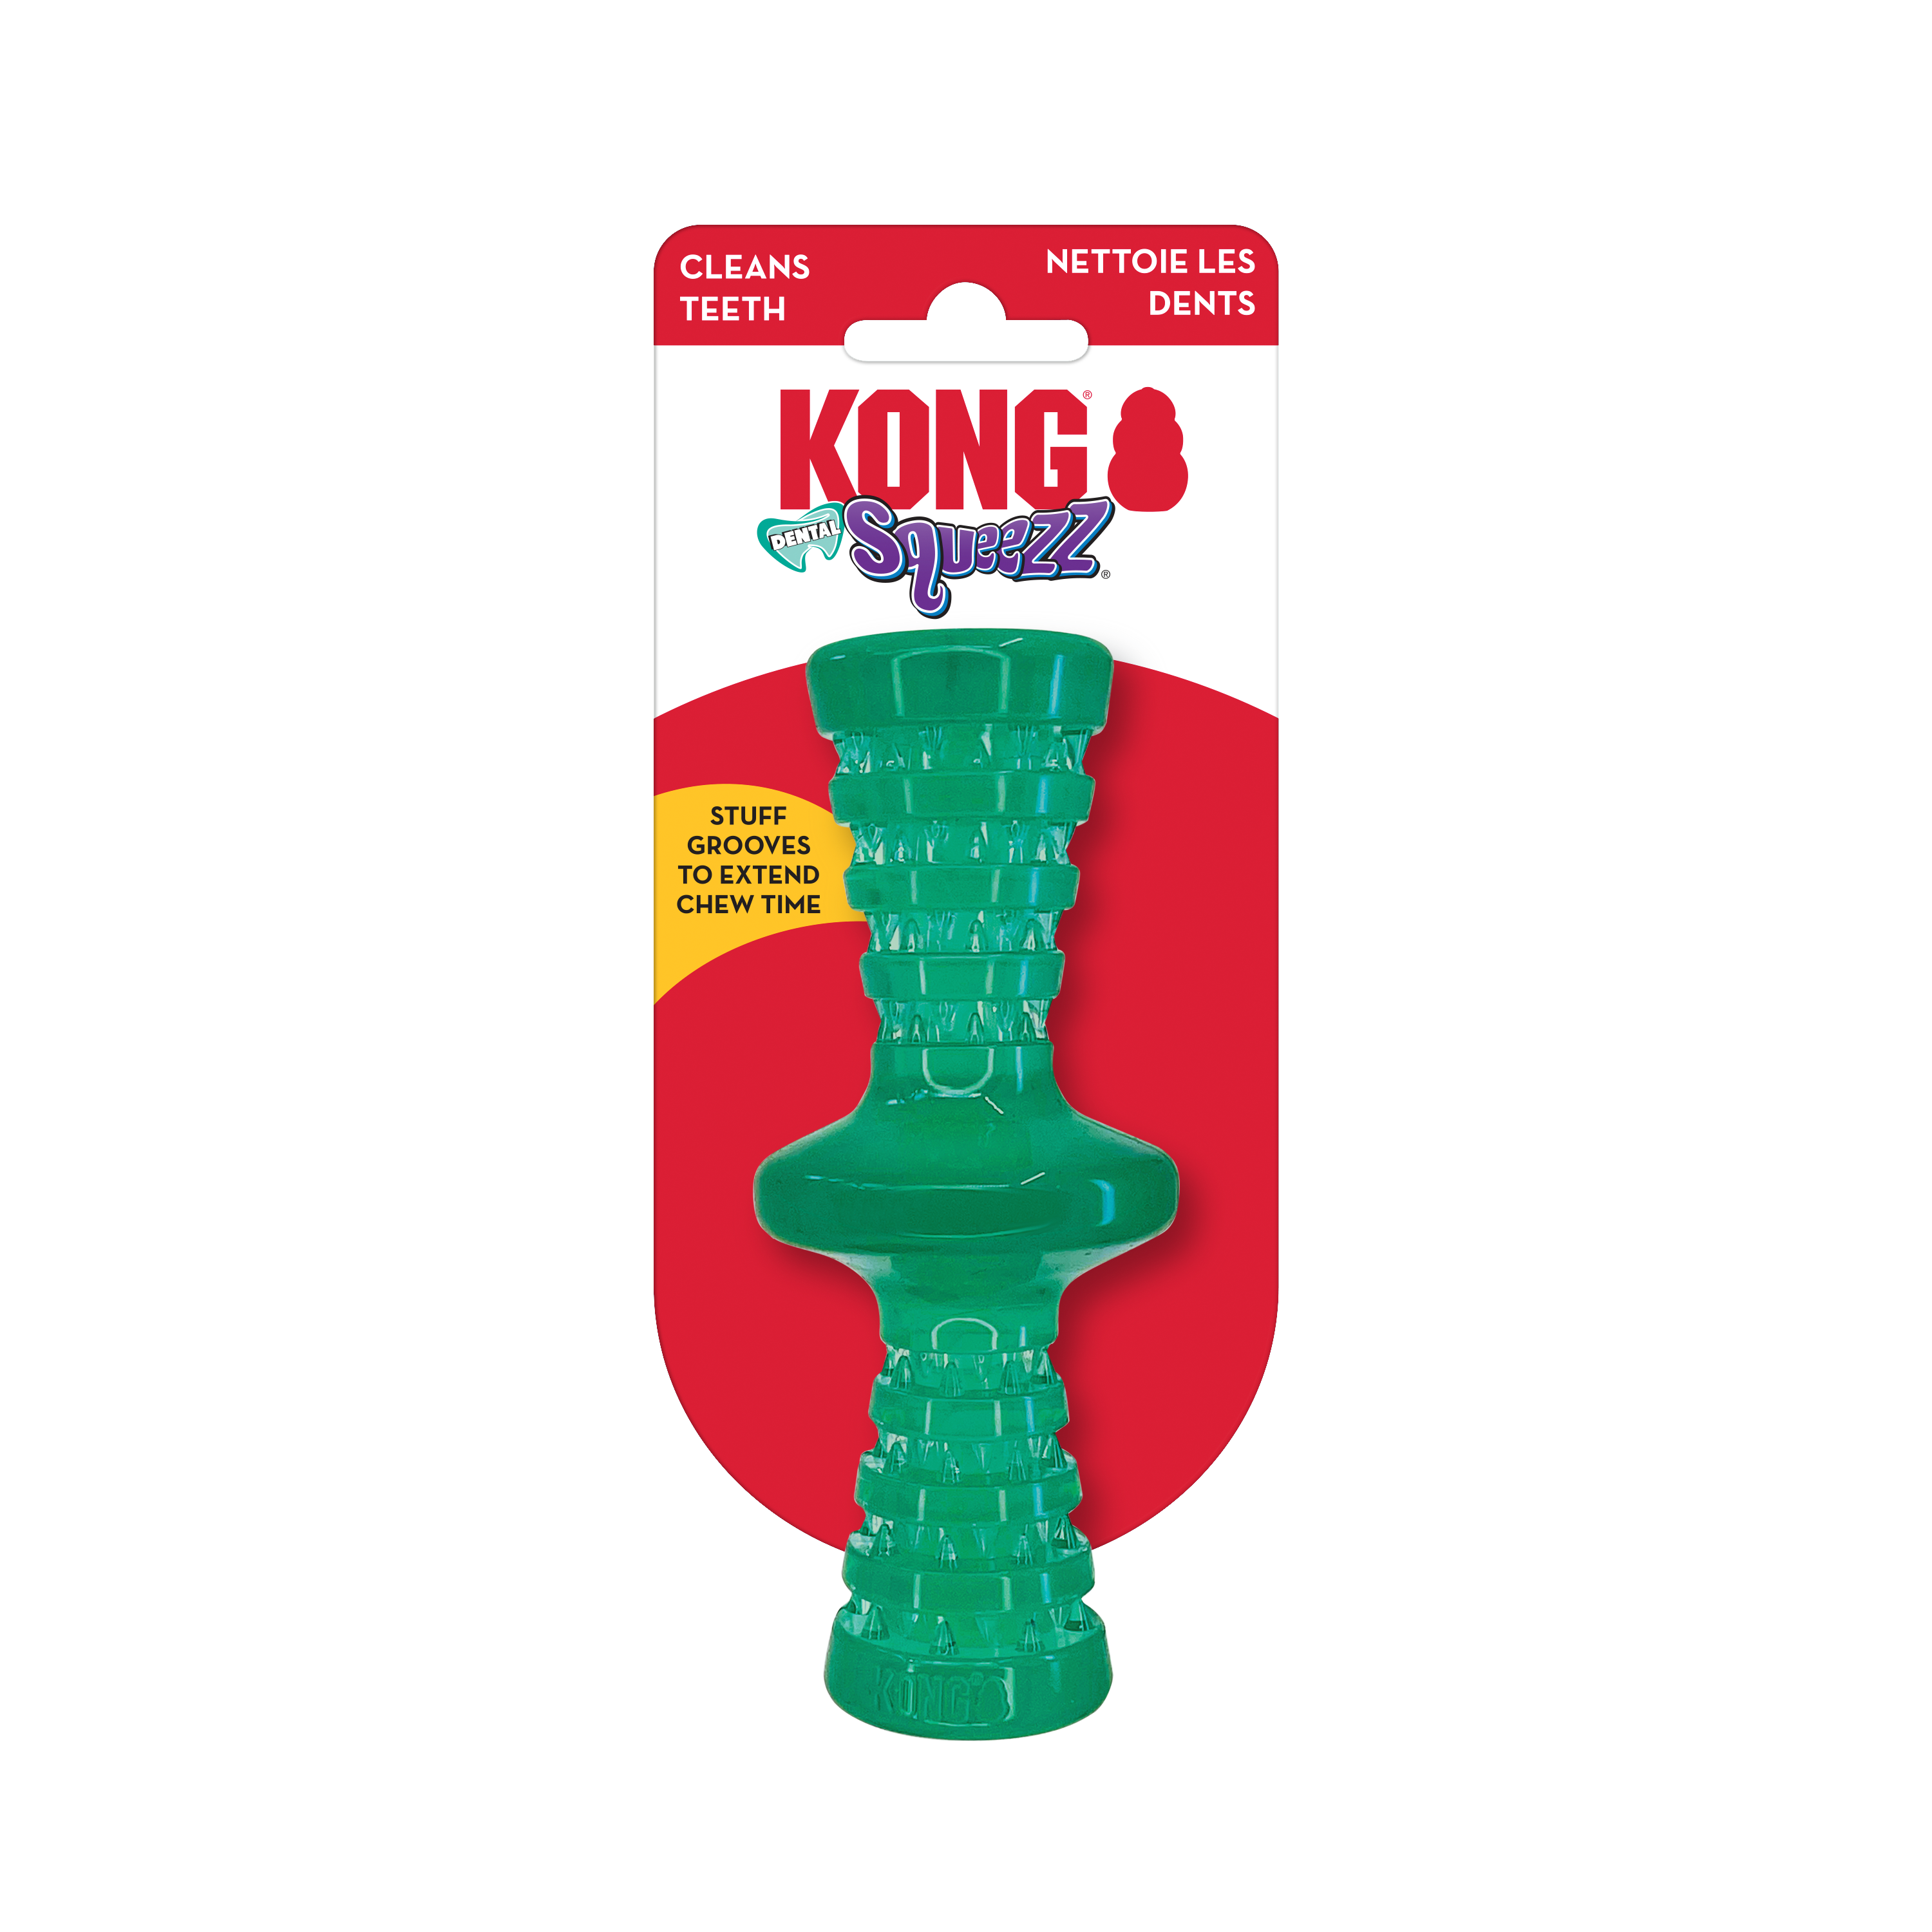 Squeezz Imagem do produto do Dental Roller Stick na embalagem